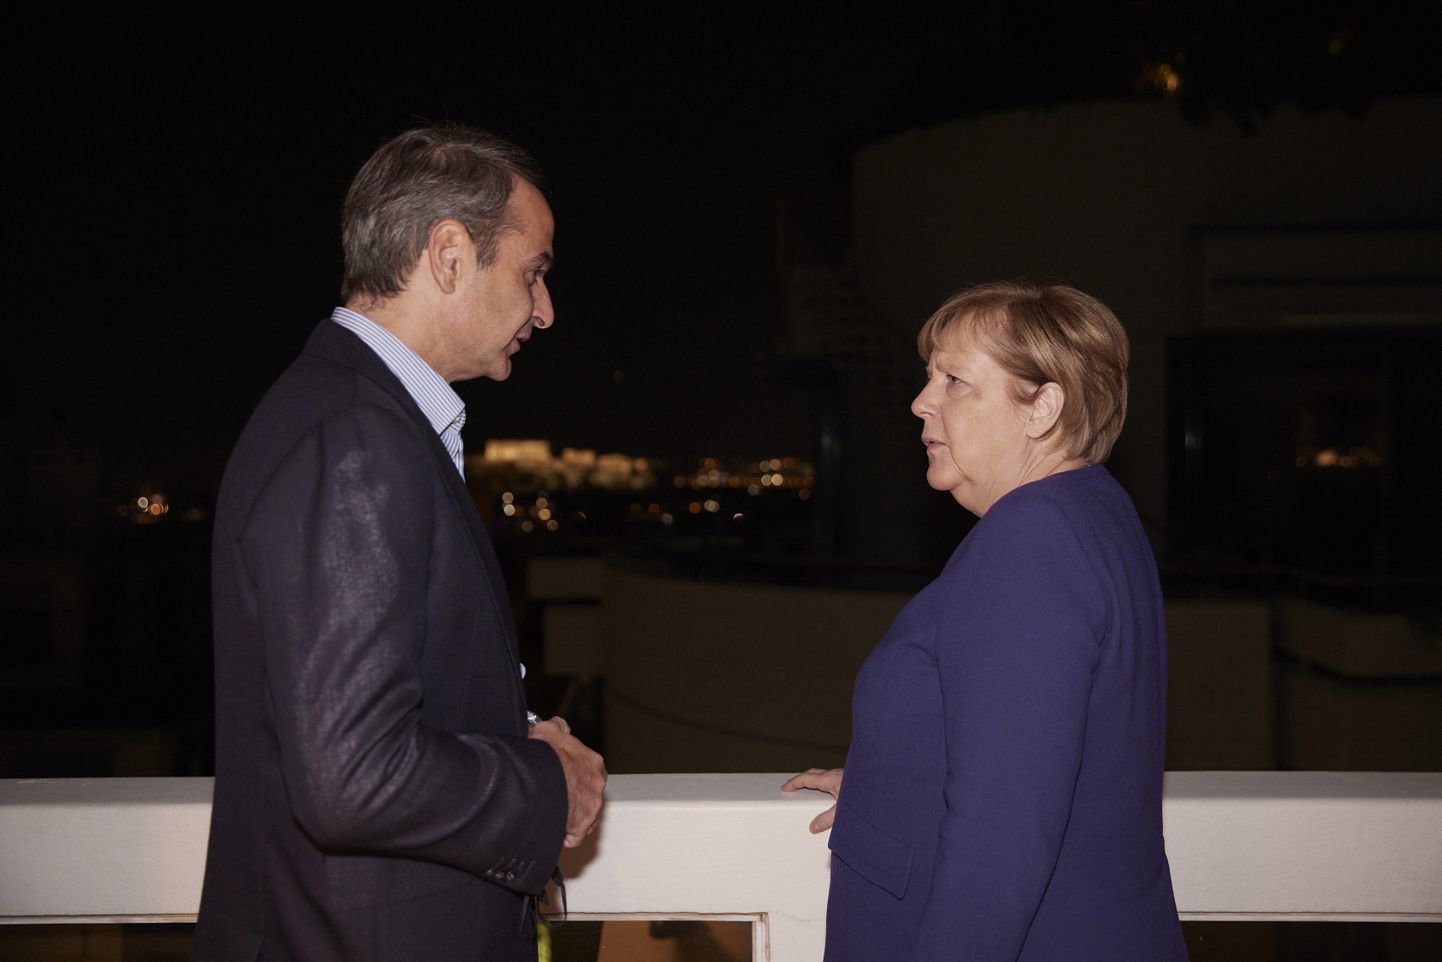 Kreeka peaminister Kyriakos Mitsotakis ja Saksa liidukantsler Angela Merkel.